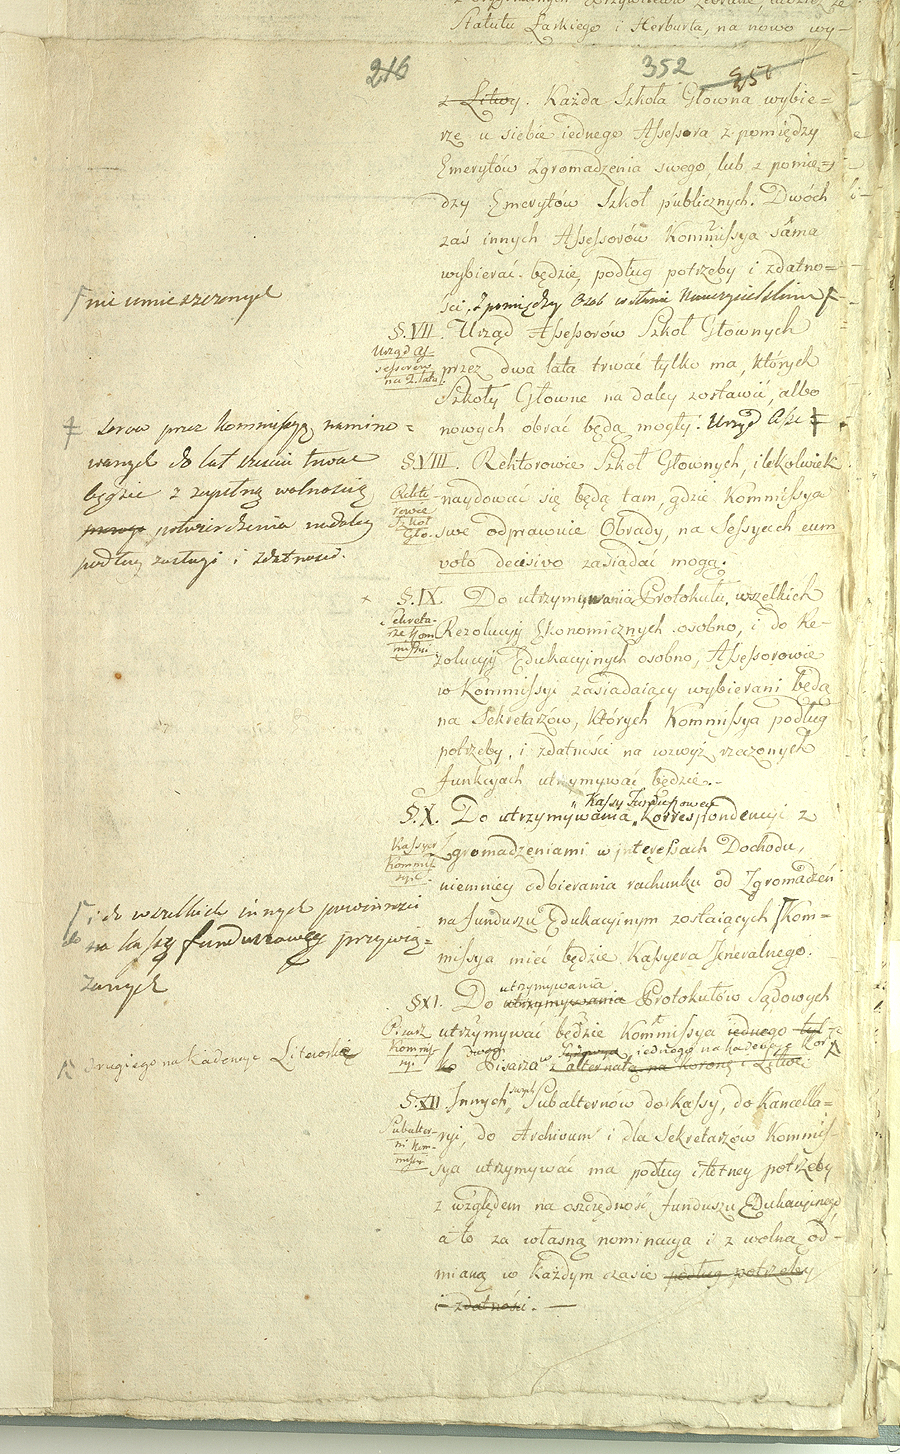 국가교육위원회 문서

폴란드의 교육시스템 개혁과 관련하여 1773-1794년에 작성된 서류와 녹음자료 컬렉션이다.